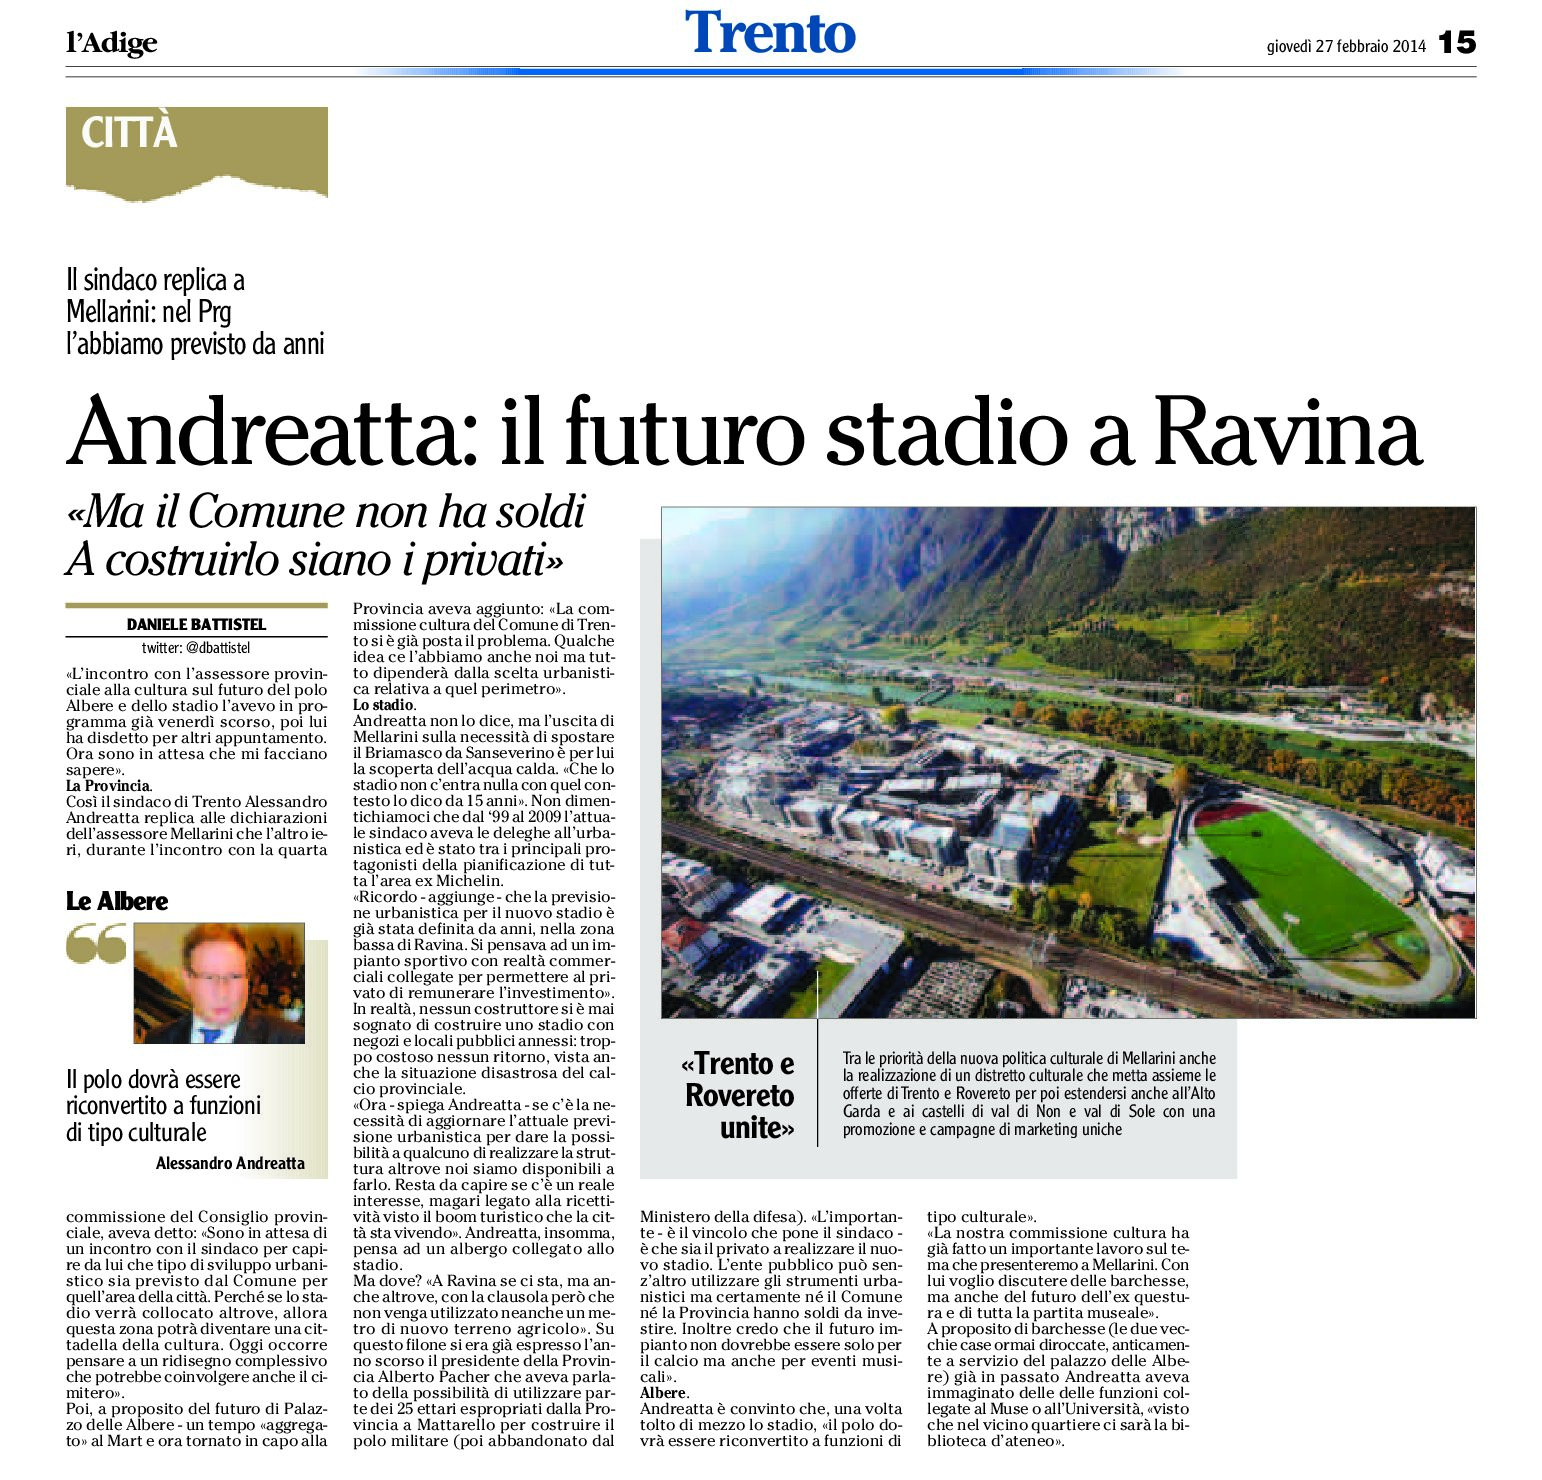 Trento: Andreatta replica a Mellarini “il futuro stadio a Ravina”